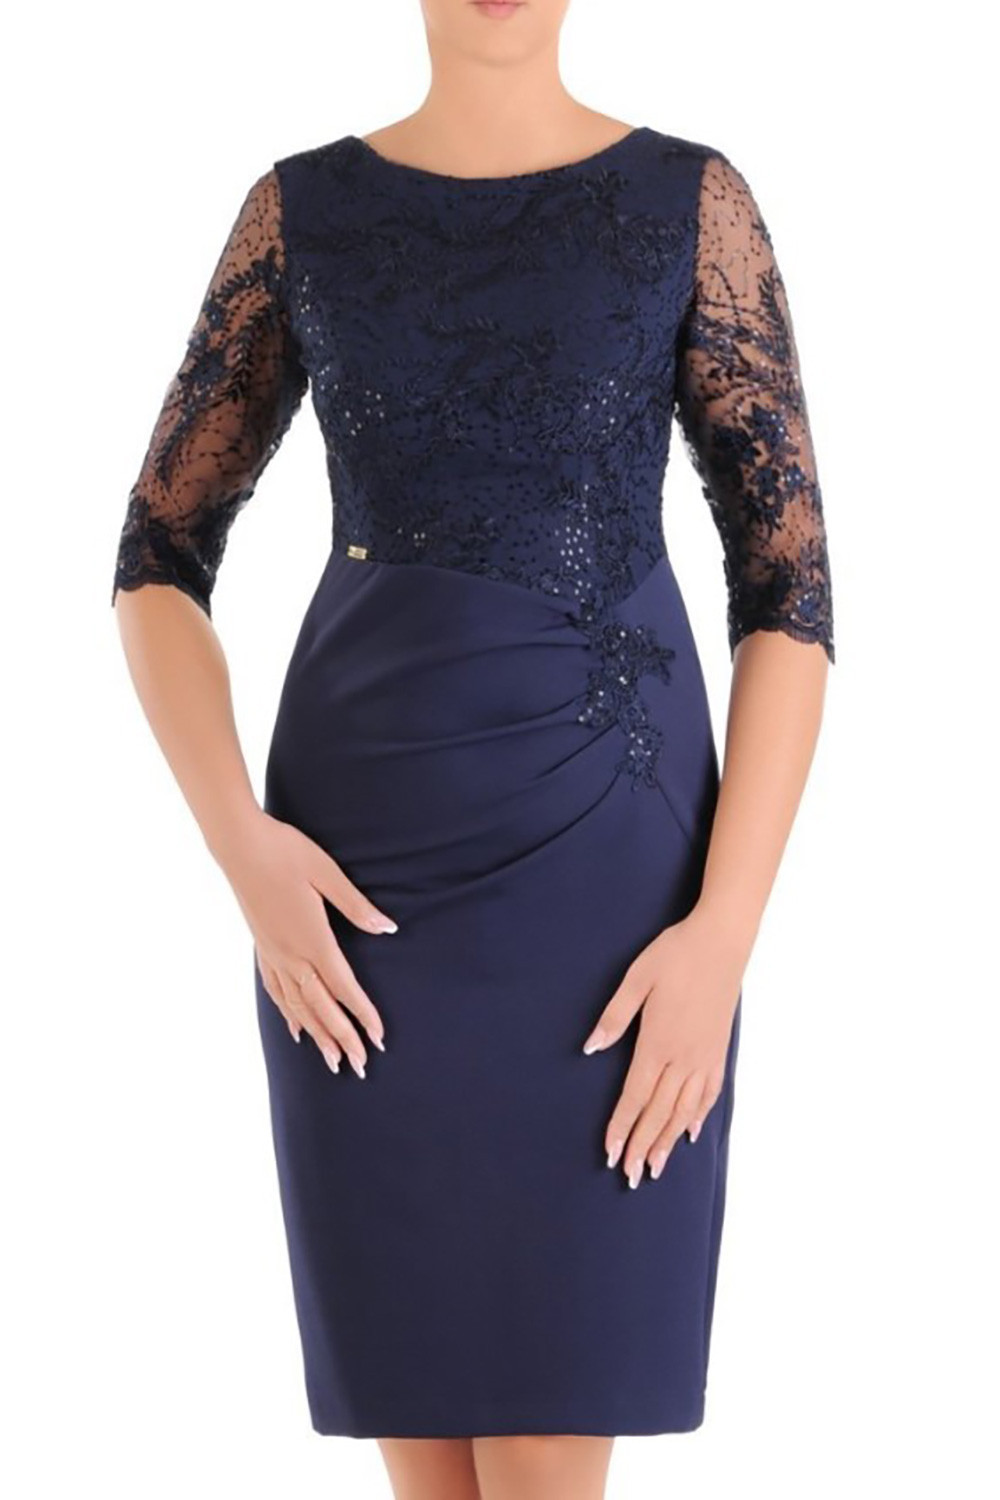 Dámské šaty Silwane model 152763 - Jersa 42 tmavě modrá